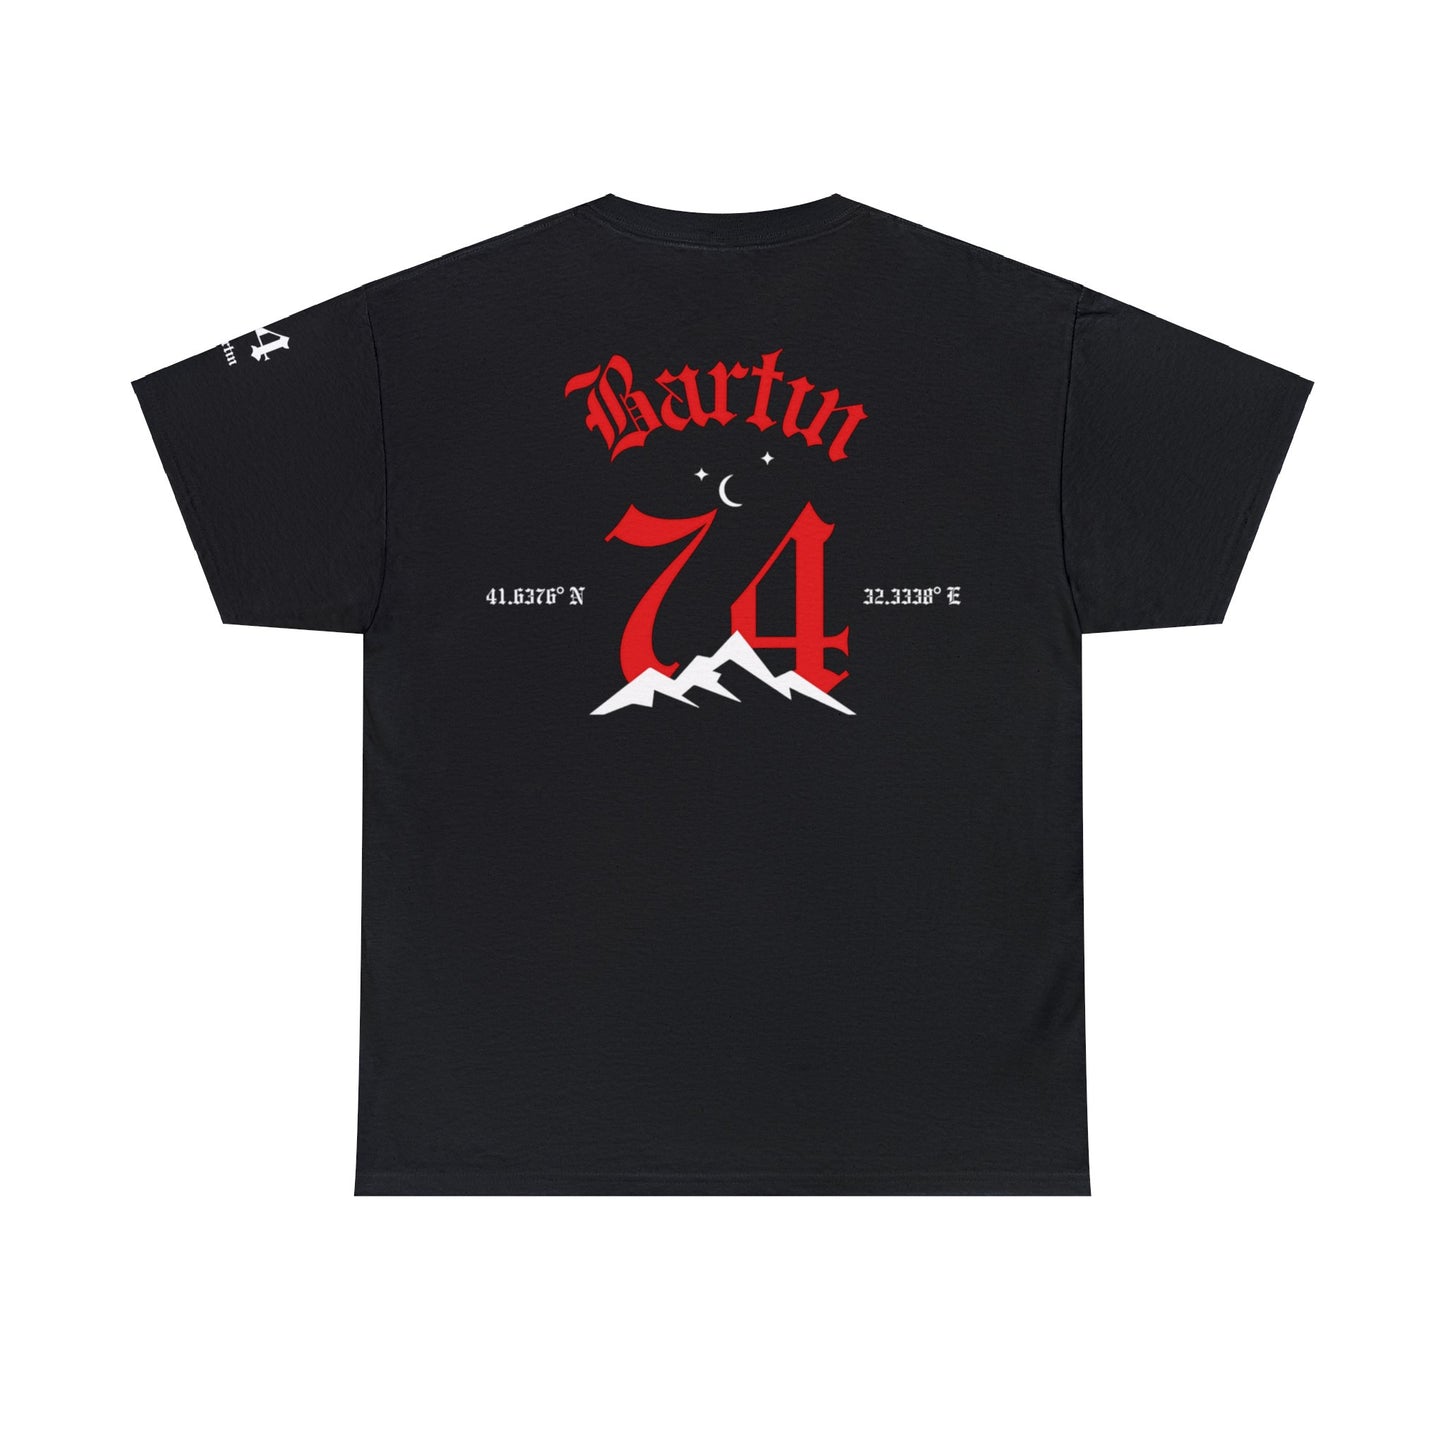 Şehirim - 74 Bartın - T-Shirt - Back Print - Black